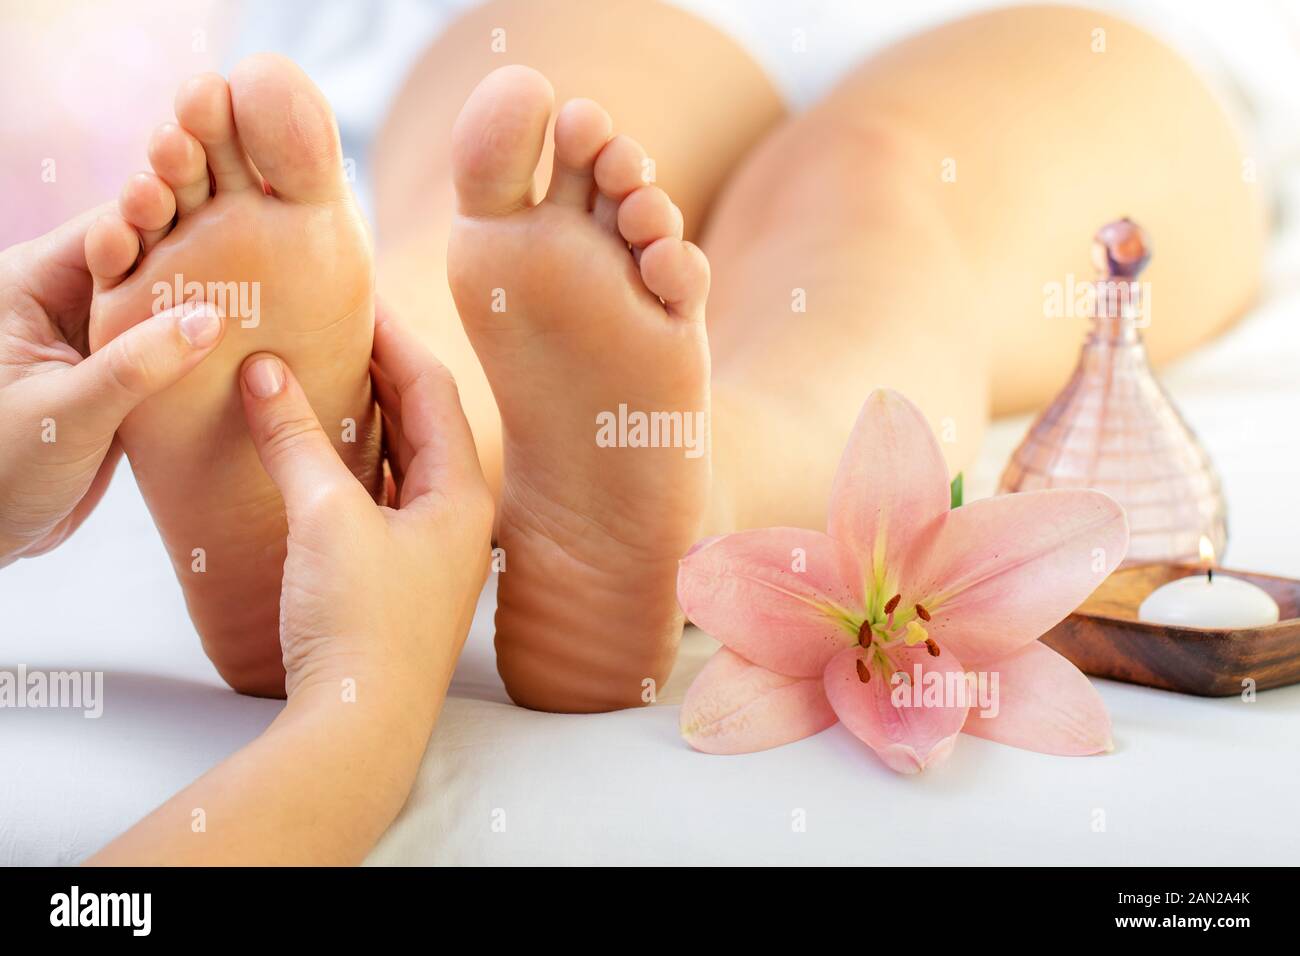 El antiguo arte del masaje con los pies